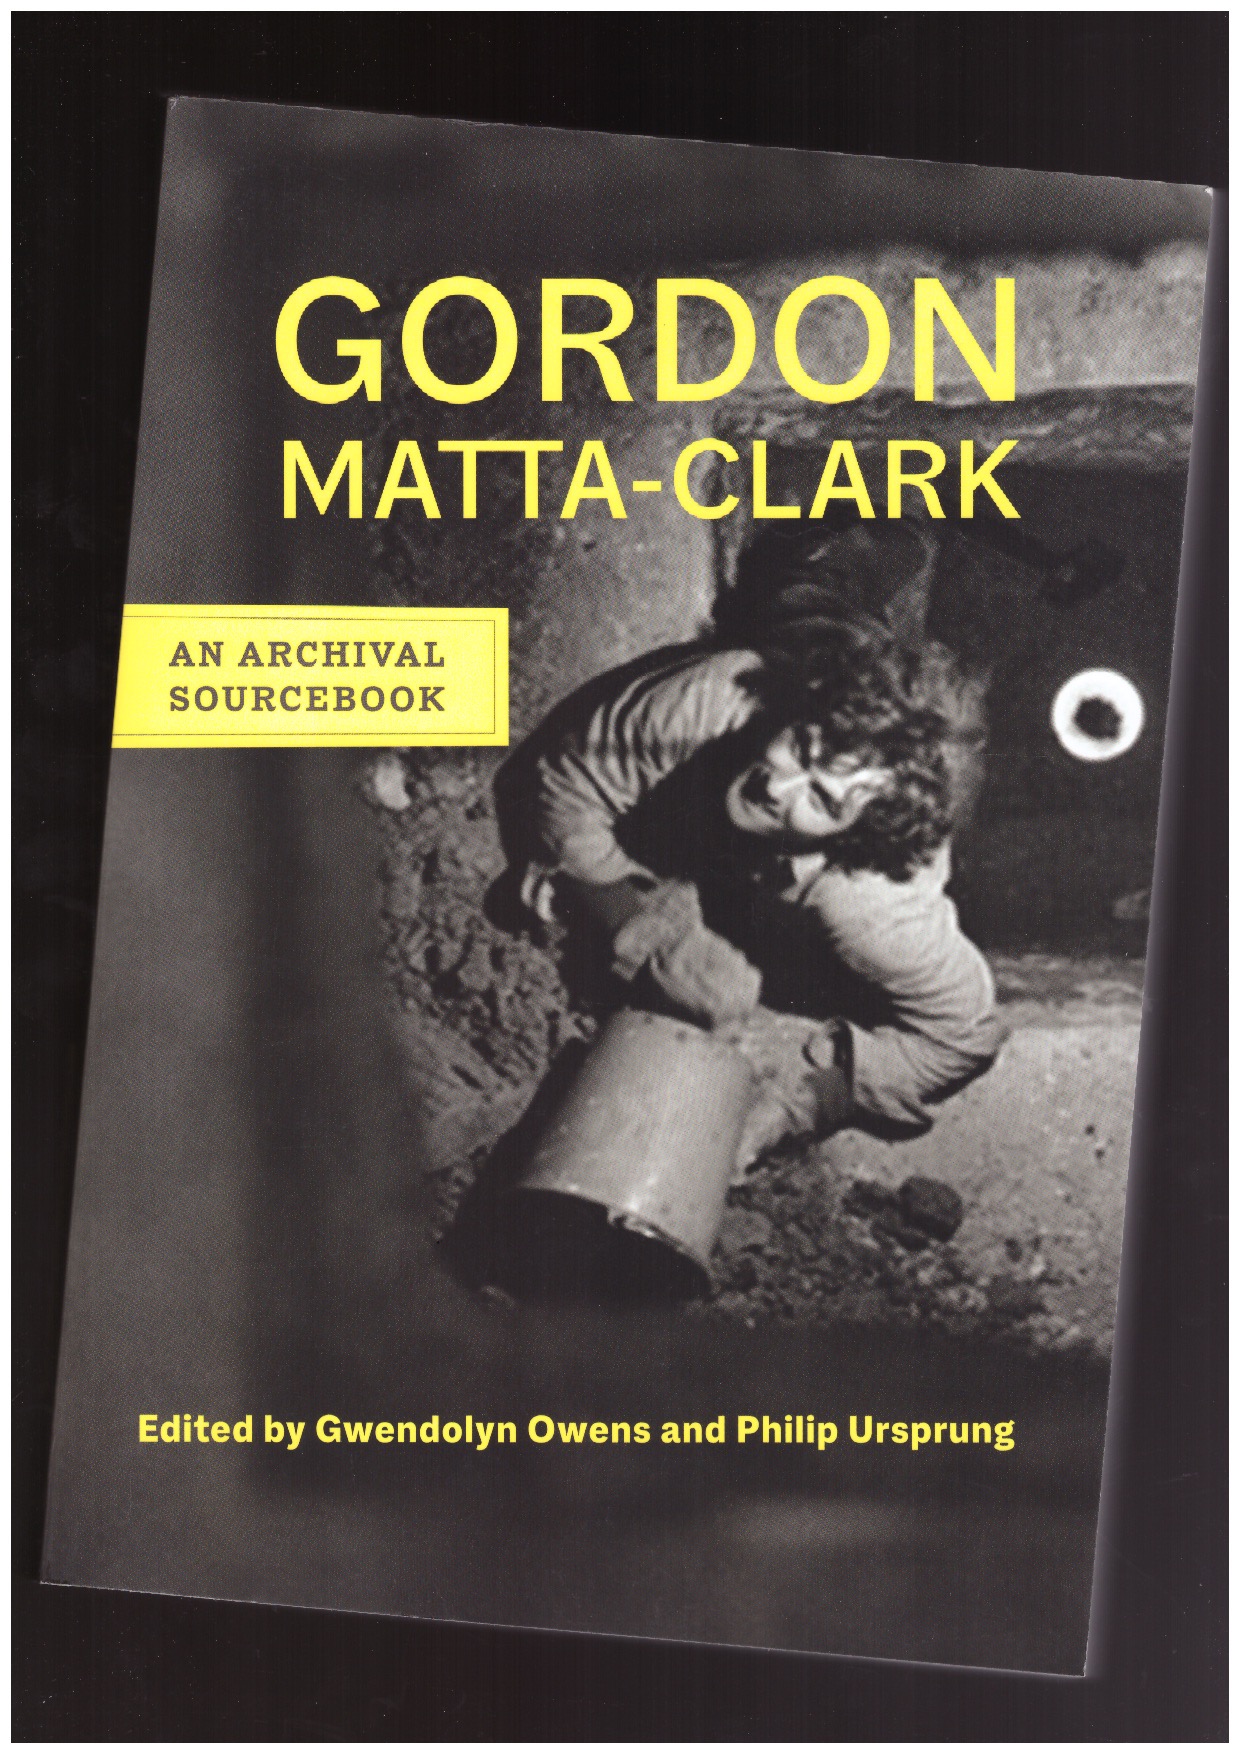 OWENS, Gwendolyn; URSPRUNG, Philip (eds) - Gordon Matta-Clark. An Archival Sourcebook